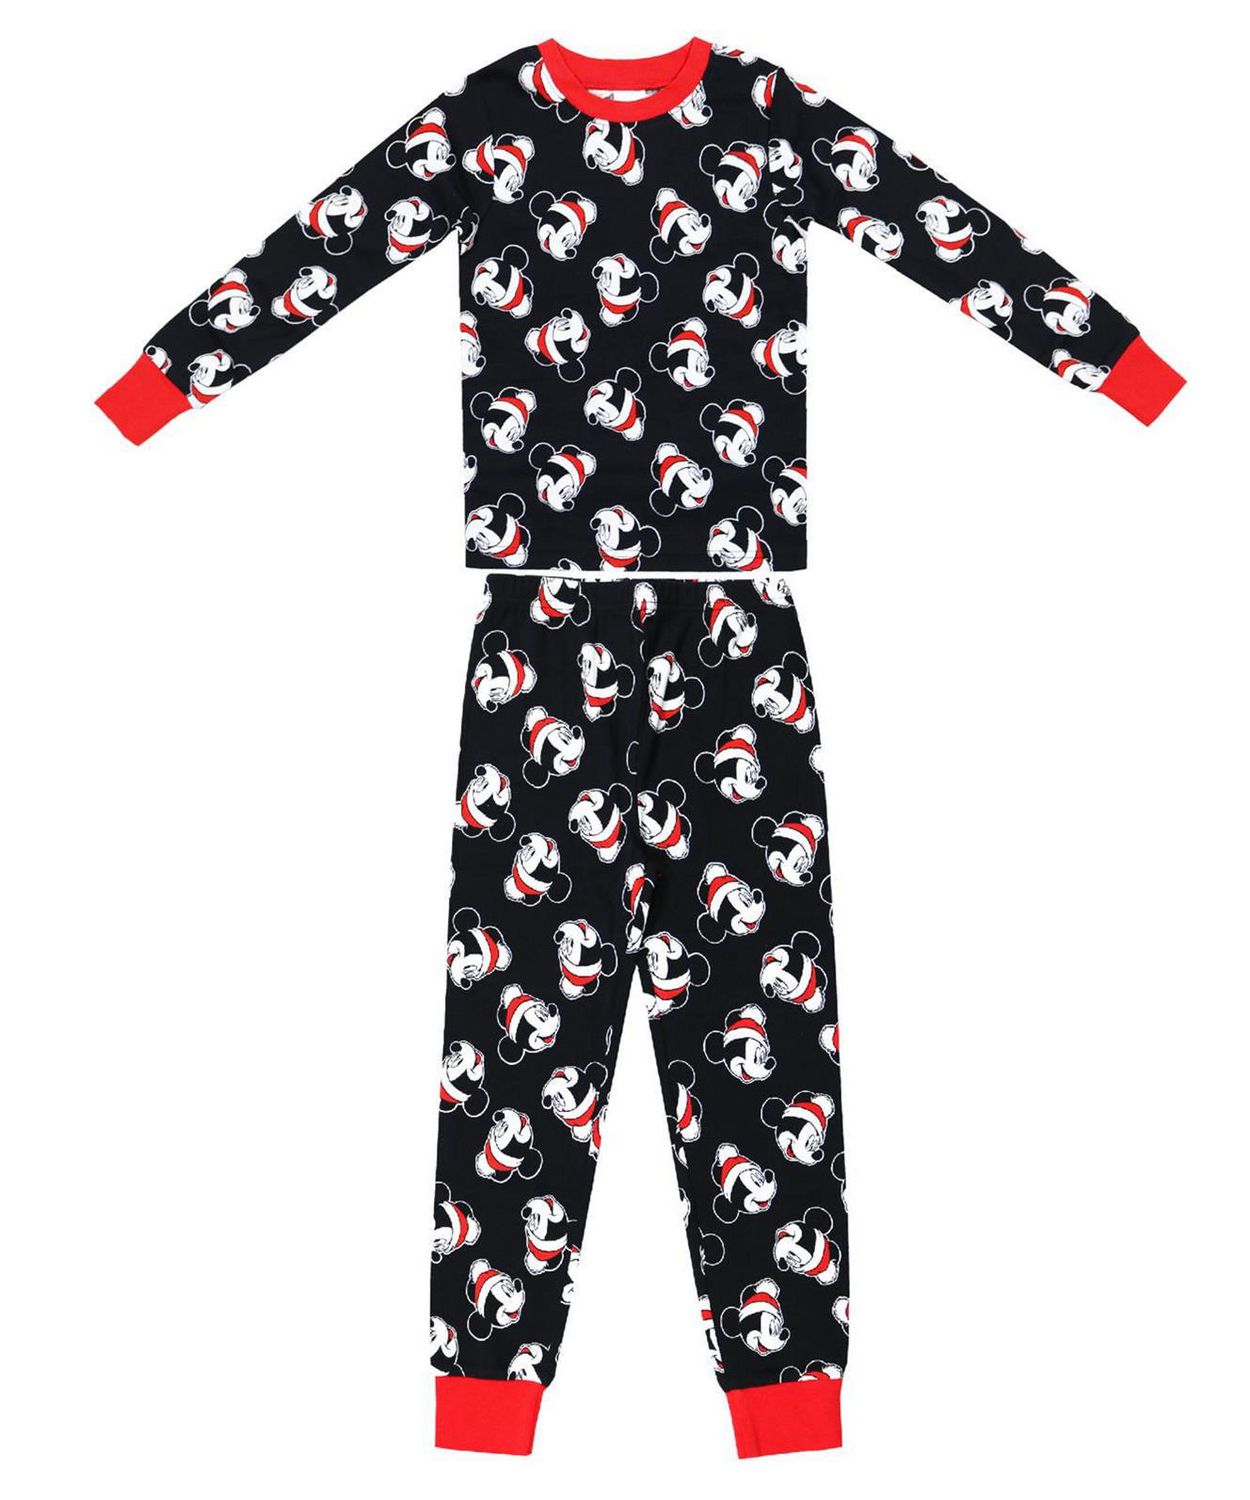 22-2292 Pyjama enfant imprimé MICKEY MOUSE manches longues de 2 à 6 ans en coton 4/5